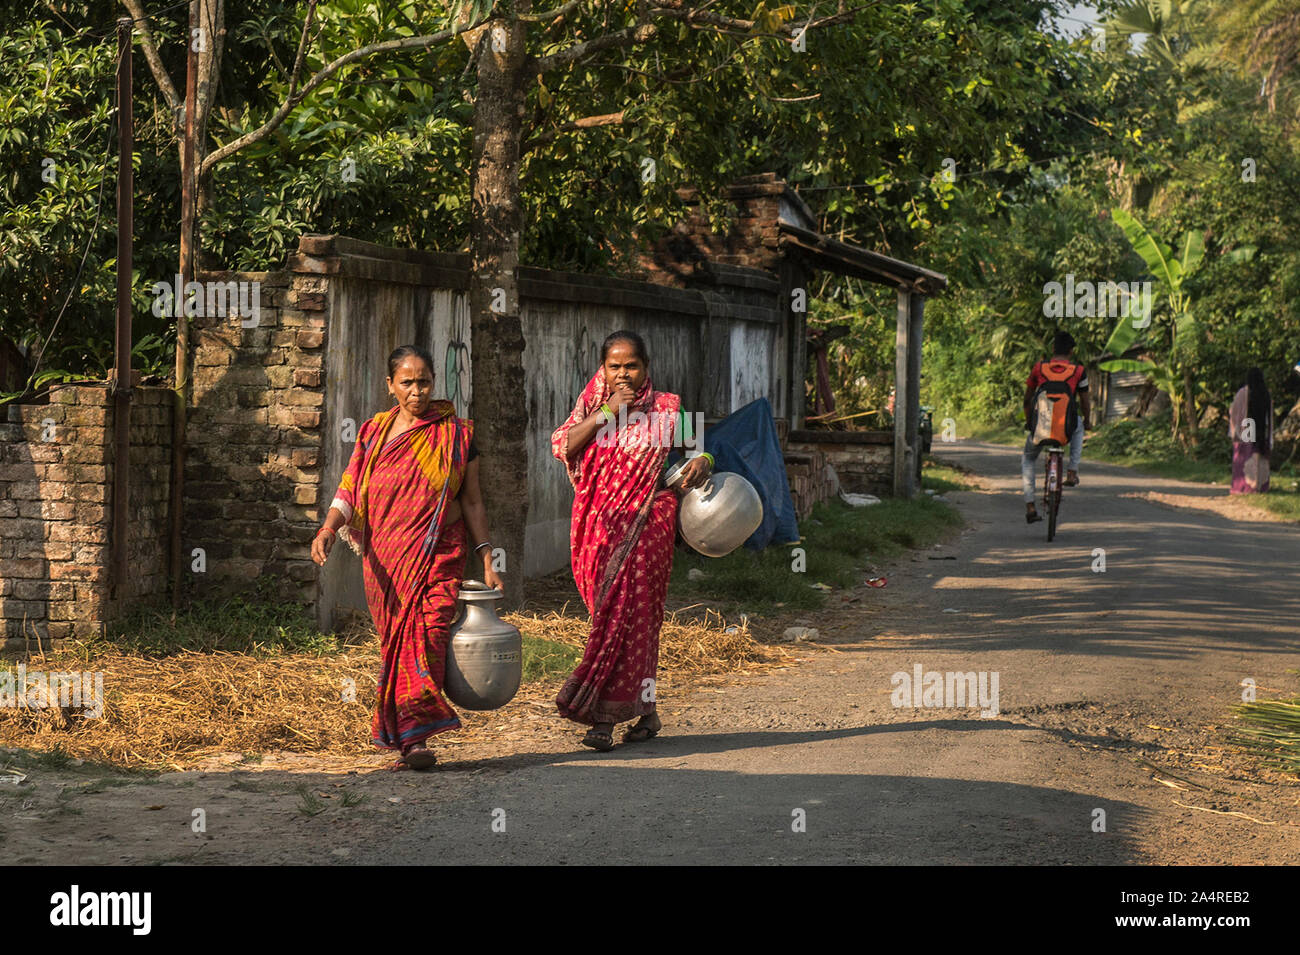 Kolkata, Indien am 15. Oktober. 15 Okt, 2008. Weibliche Dorfbewohner tragen Trinkwasser am Internationalen Tag der ländlichen Frauen an narayanpur Dorf gesammelt, rund 45 km entfernt von Kolkata, Indien am Okt. 15, 2019. Die ersten Internationalen Tag der Frauen in ländlichen Gebieten wurde am 15. Oktober 2008 eingehalten werden. Der Tag, von der Generalversammlung der Vereinten Nationen am Dez. 18, 2007 gegründet, erkennt die wichtige Rolle und den Beitrag der Frauen in ländlichen Gebieten, einschließlich indigener Frauen, bei der Verbesserung der landwirtschaftlichen und ländlichen Entwicklung, die Verbesserung der Ernährungssicherheit und Bekämpfung der Armut im ländlichen Raum. Credit: tumpa Mondal/Xinhua/Alamy leben Nachrichten Stockfoto